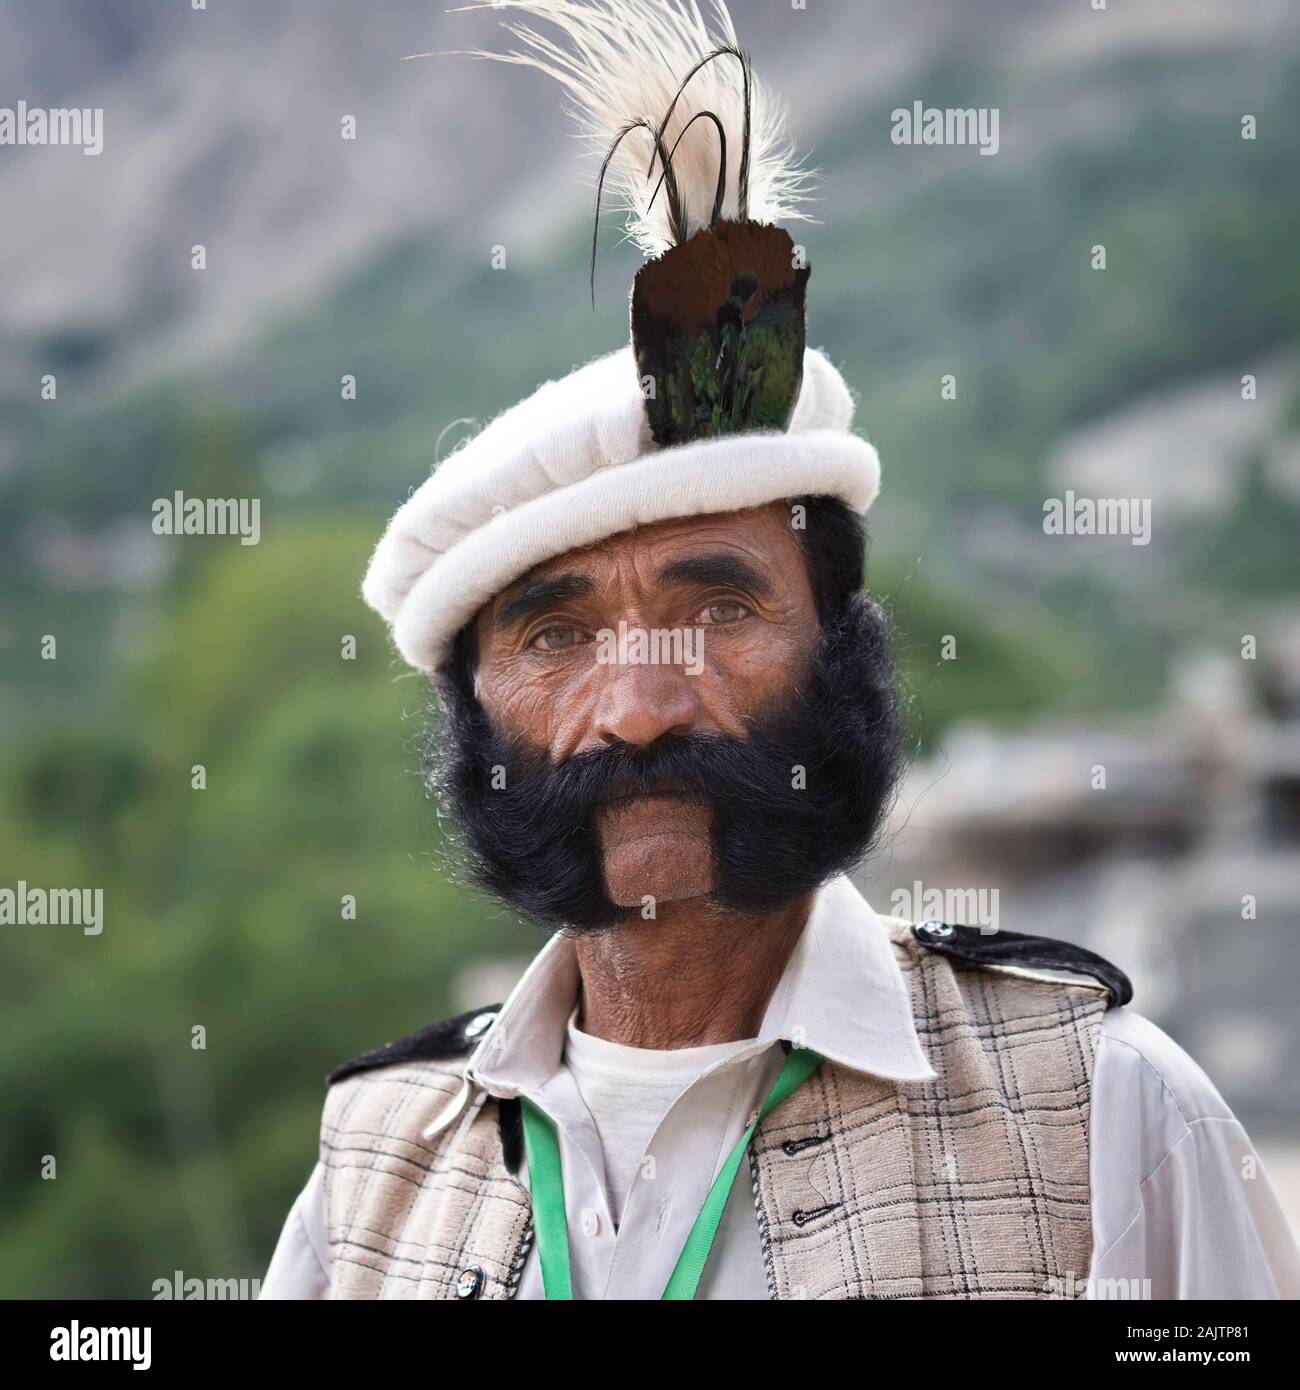 Kashmir Region of Pakistan taken in August 2019 Stock Photo